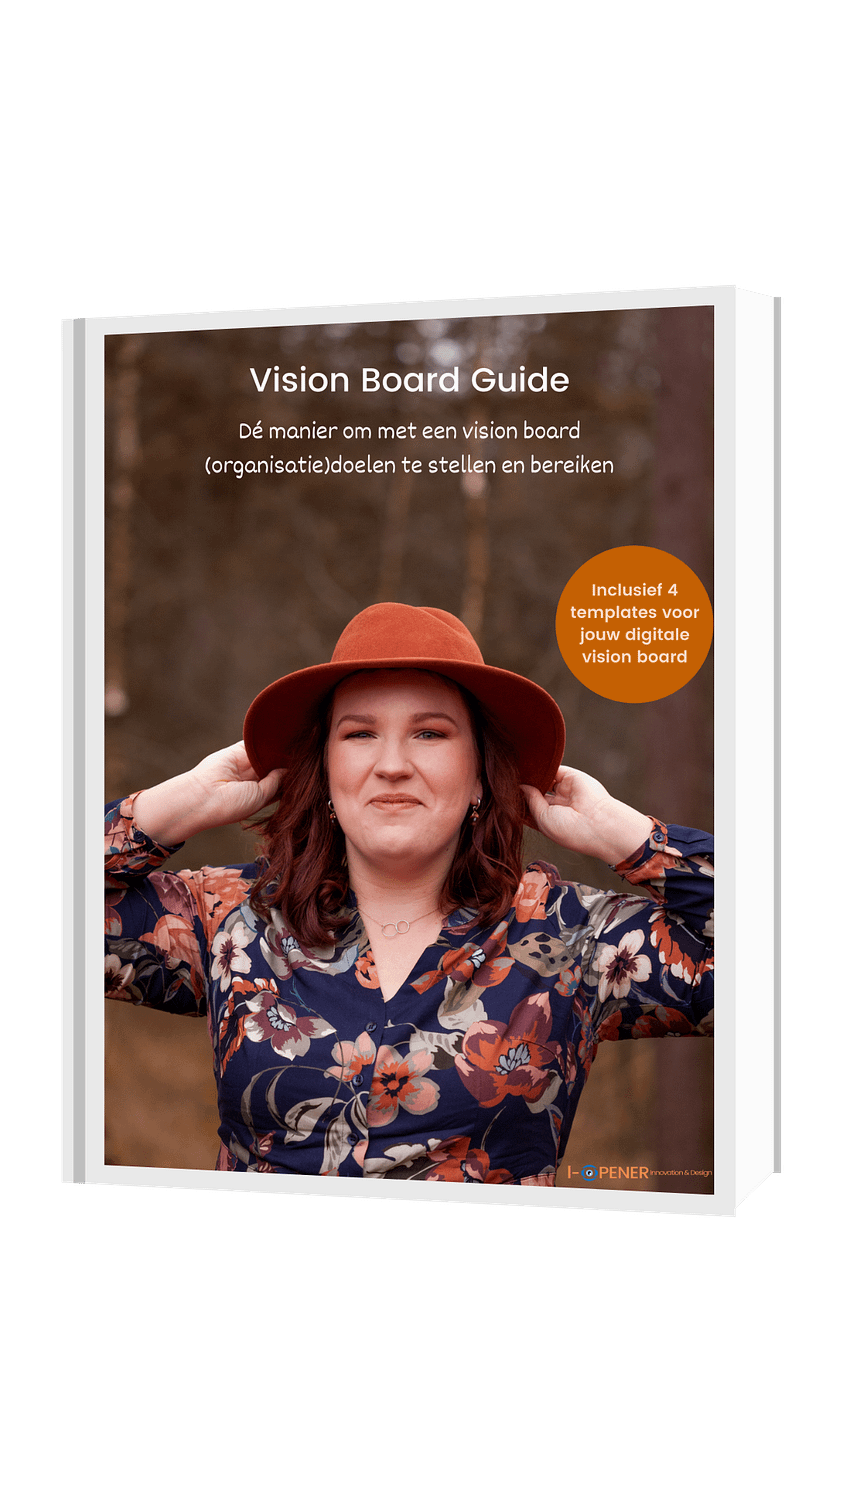 Vision Board Guide de vision board guide